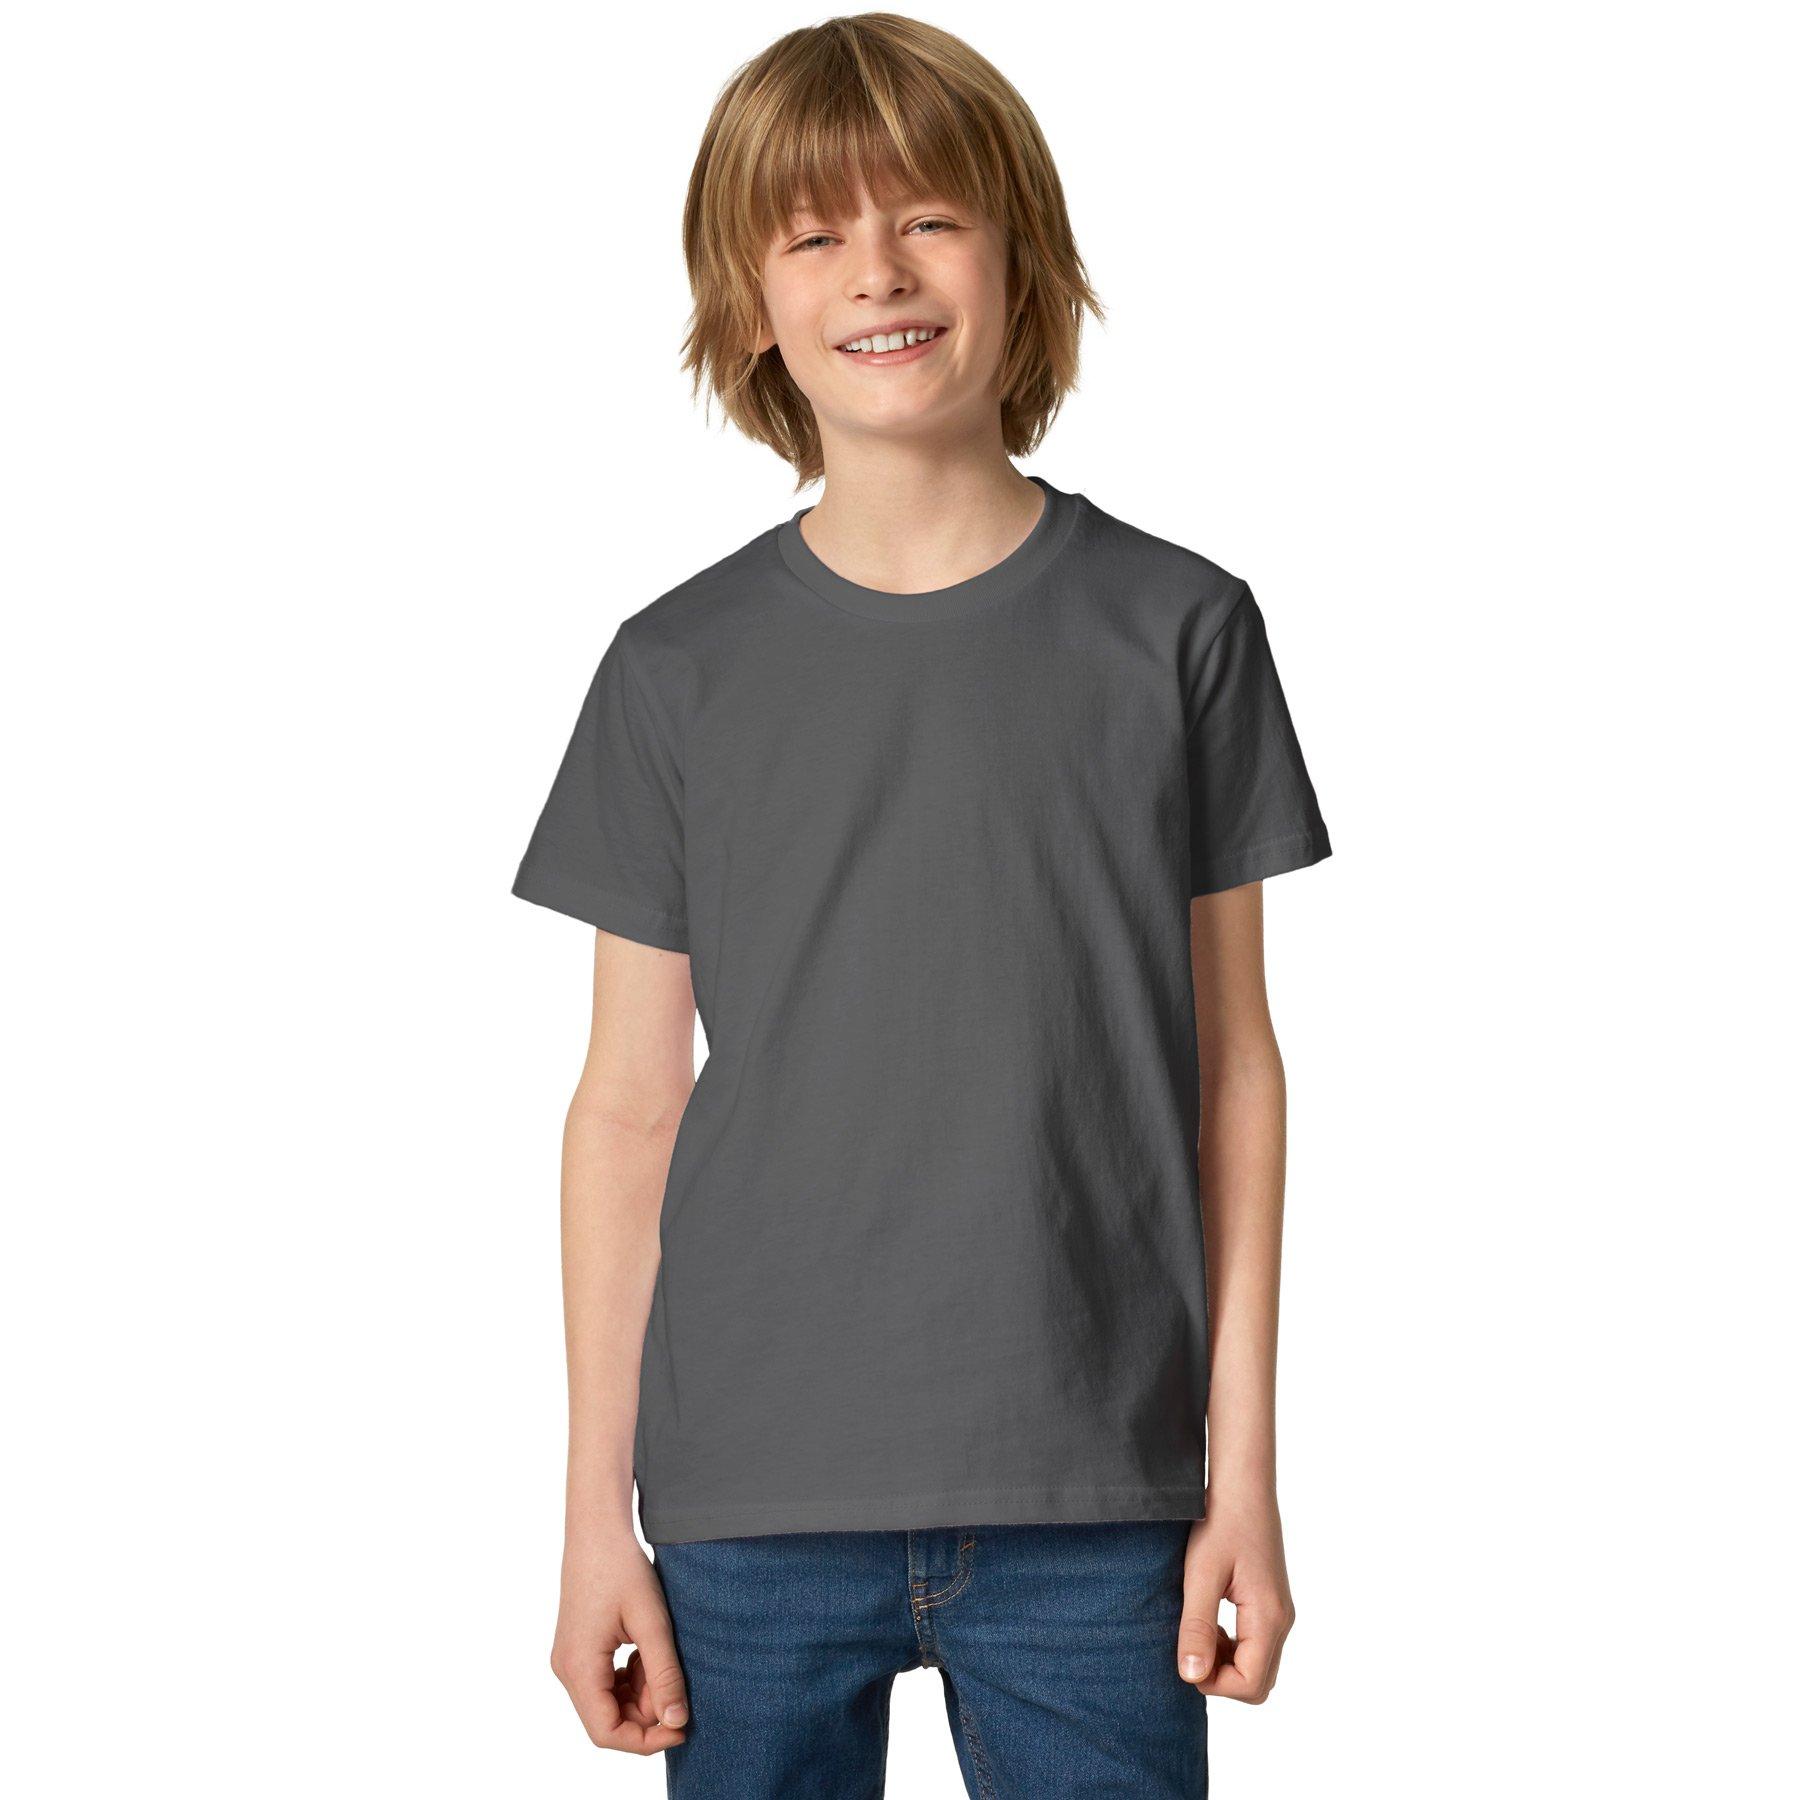 T-shirt Kinder Jungen Grau 152 von Tectake